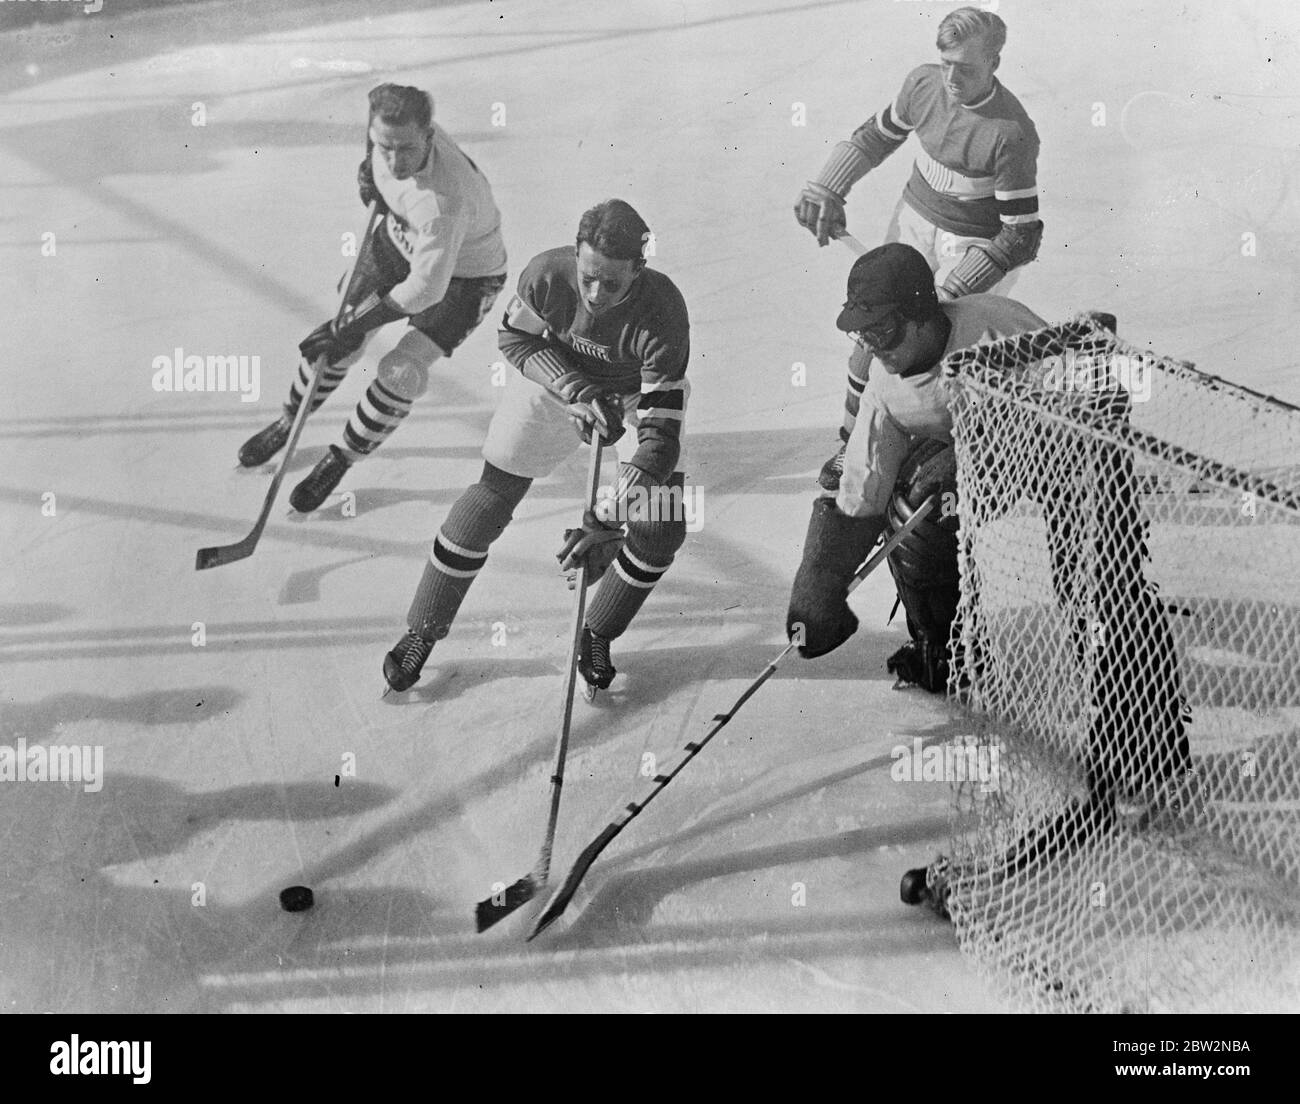 Die Olympischen Winterspiele wurden offiziell am Lake Placid eröffnet. Gouverneur Franklin D Roosevelt von New York führte die Eröffnungszeremonie der Olympischen Winterspiele 1932 am Lake Placid, New York in Anwesenheit von 350 Athleten aus 17 Nationen. Ein Zwischenfall während des Eishockeyspiels zwischen Kanada und Amerika von Kanada durch zwei Tore zu einem gewonnen. 14 Februar 1932 Stockfoto